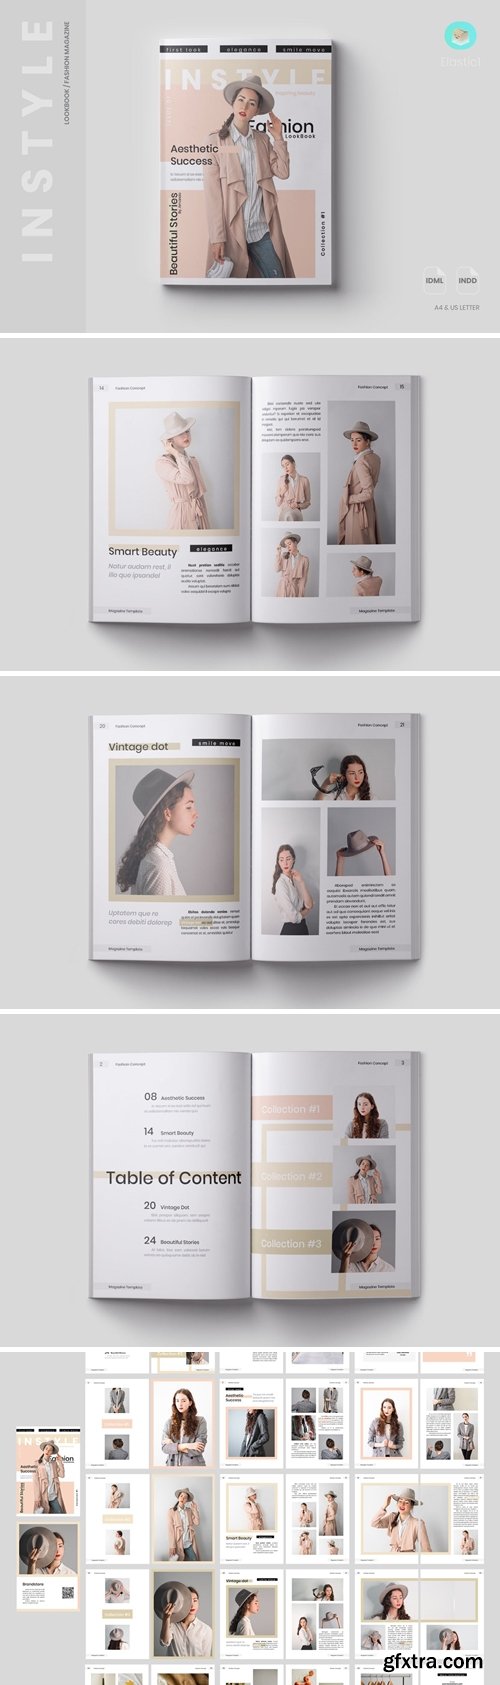 INSTYLE - Lookbook / Fashion Magazine